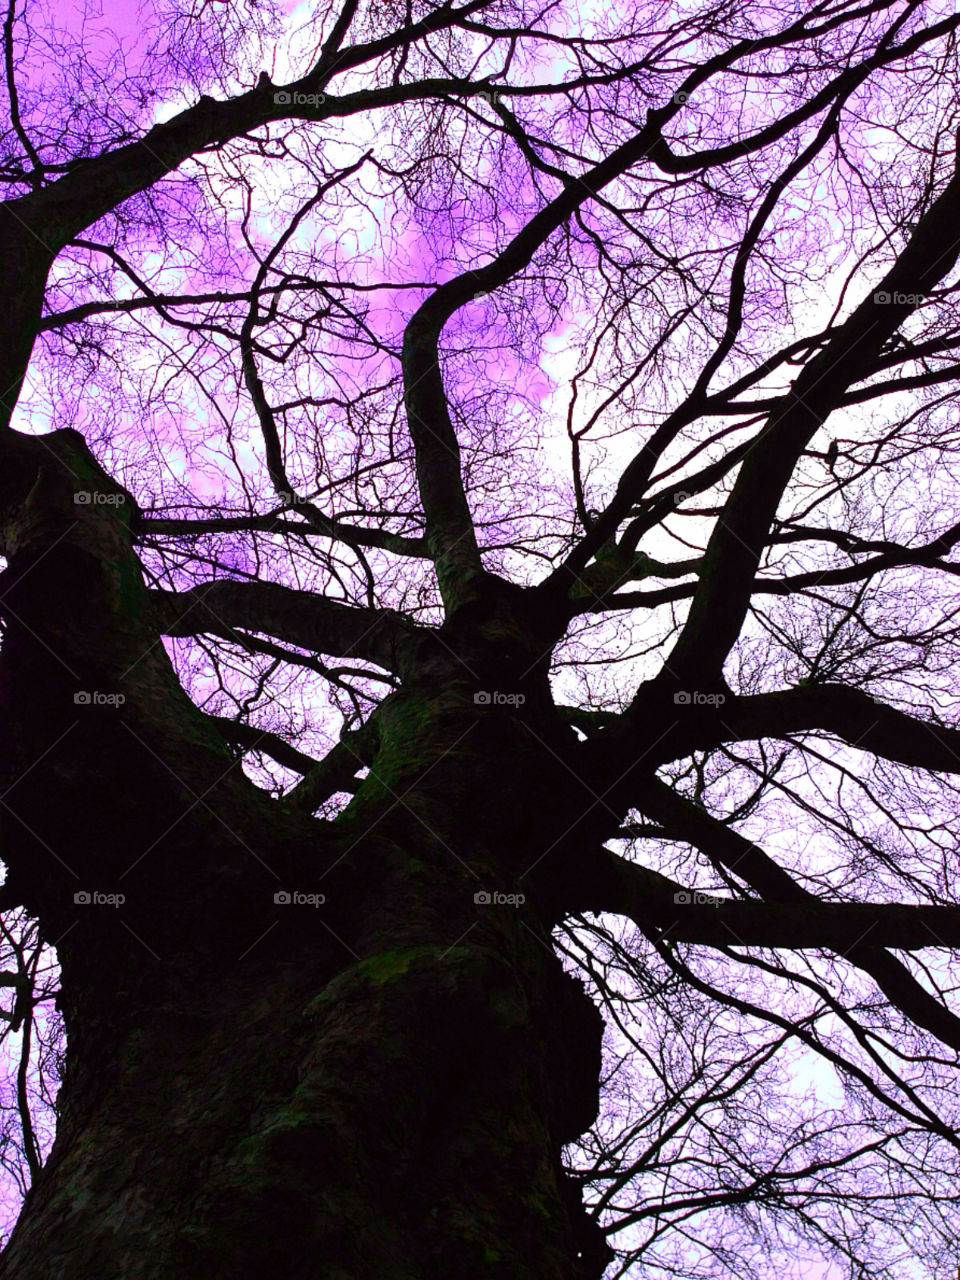 Purple trees